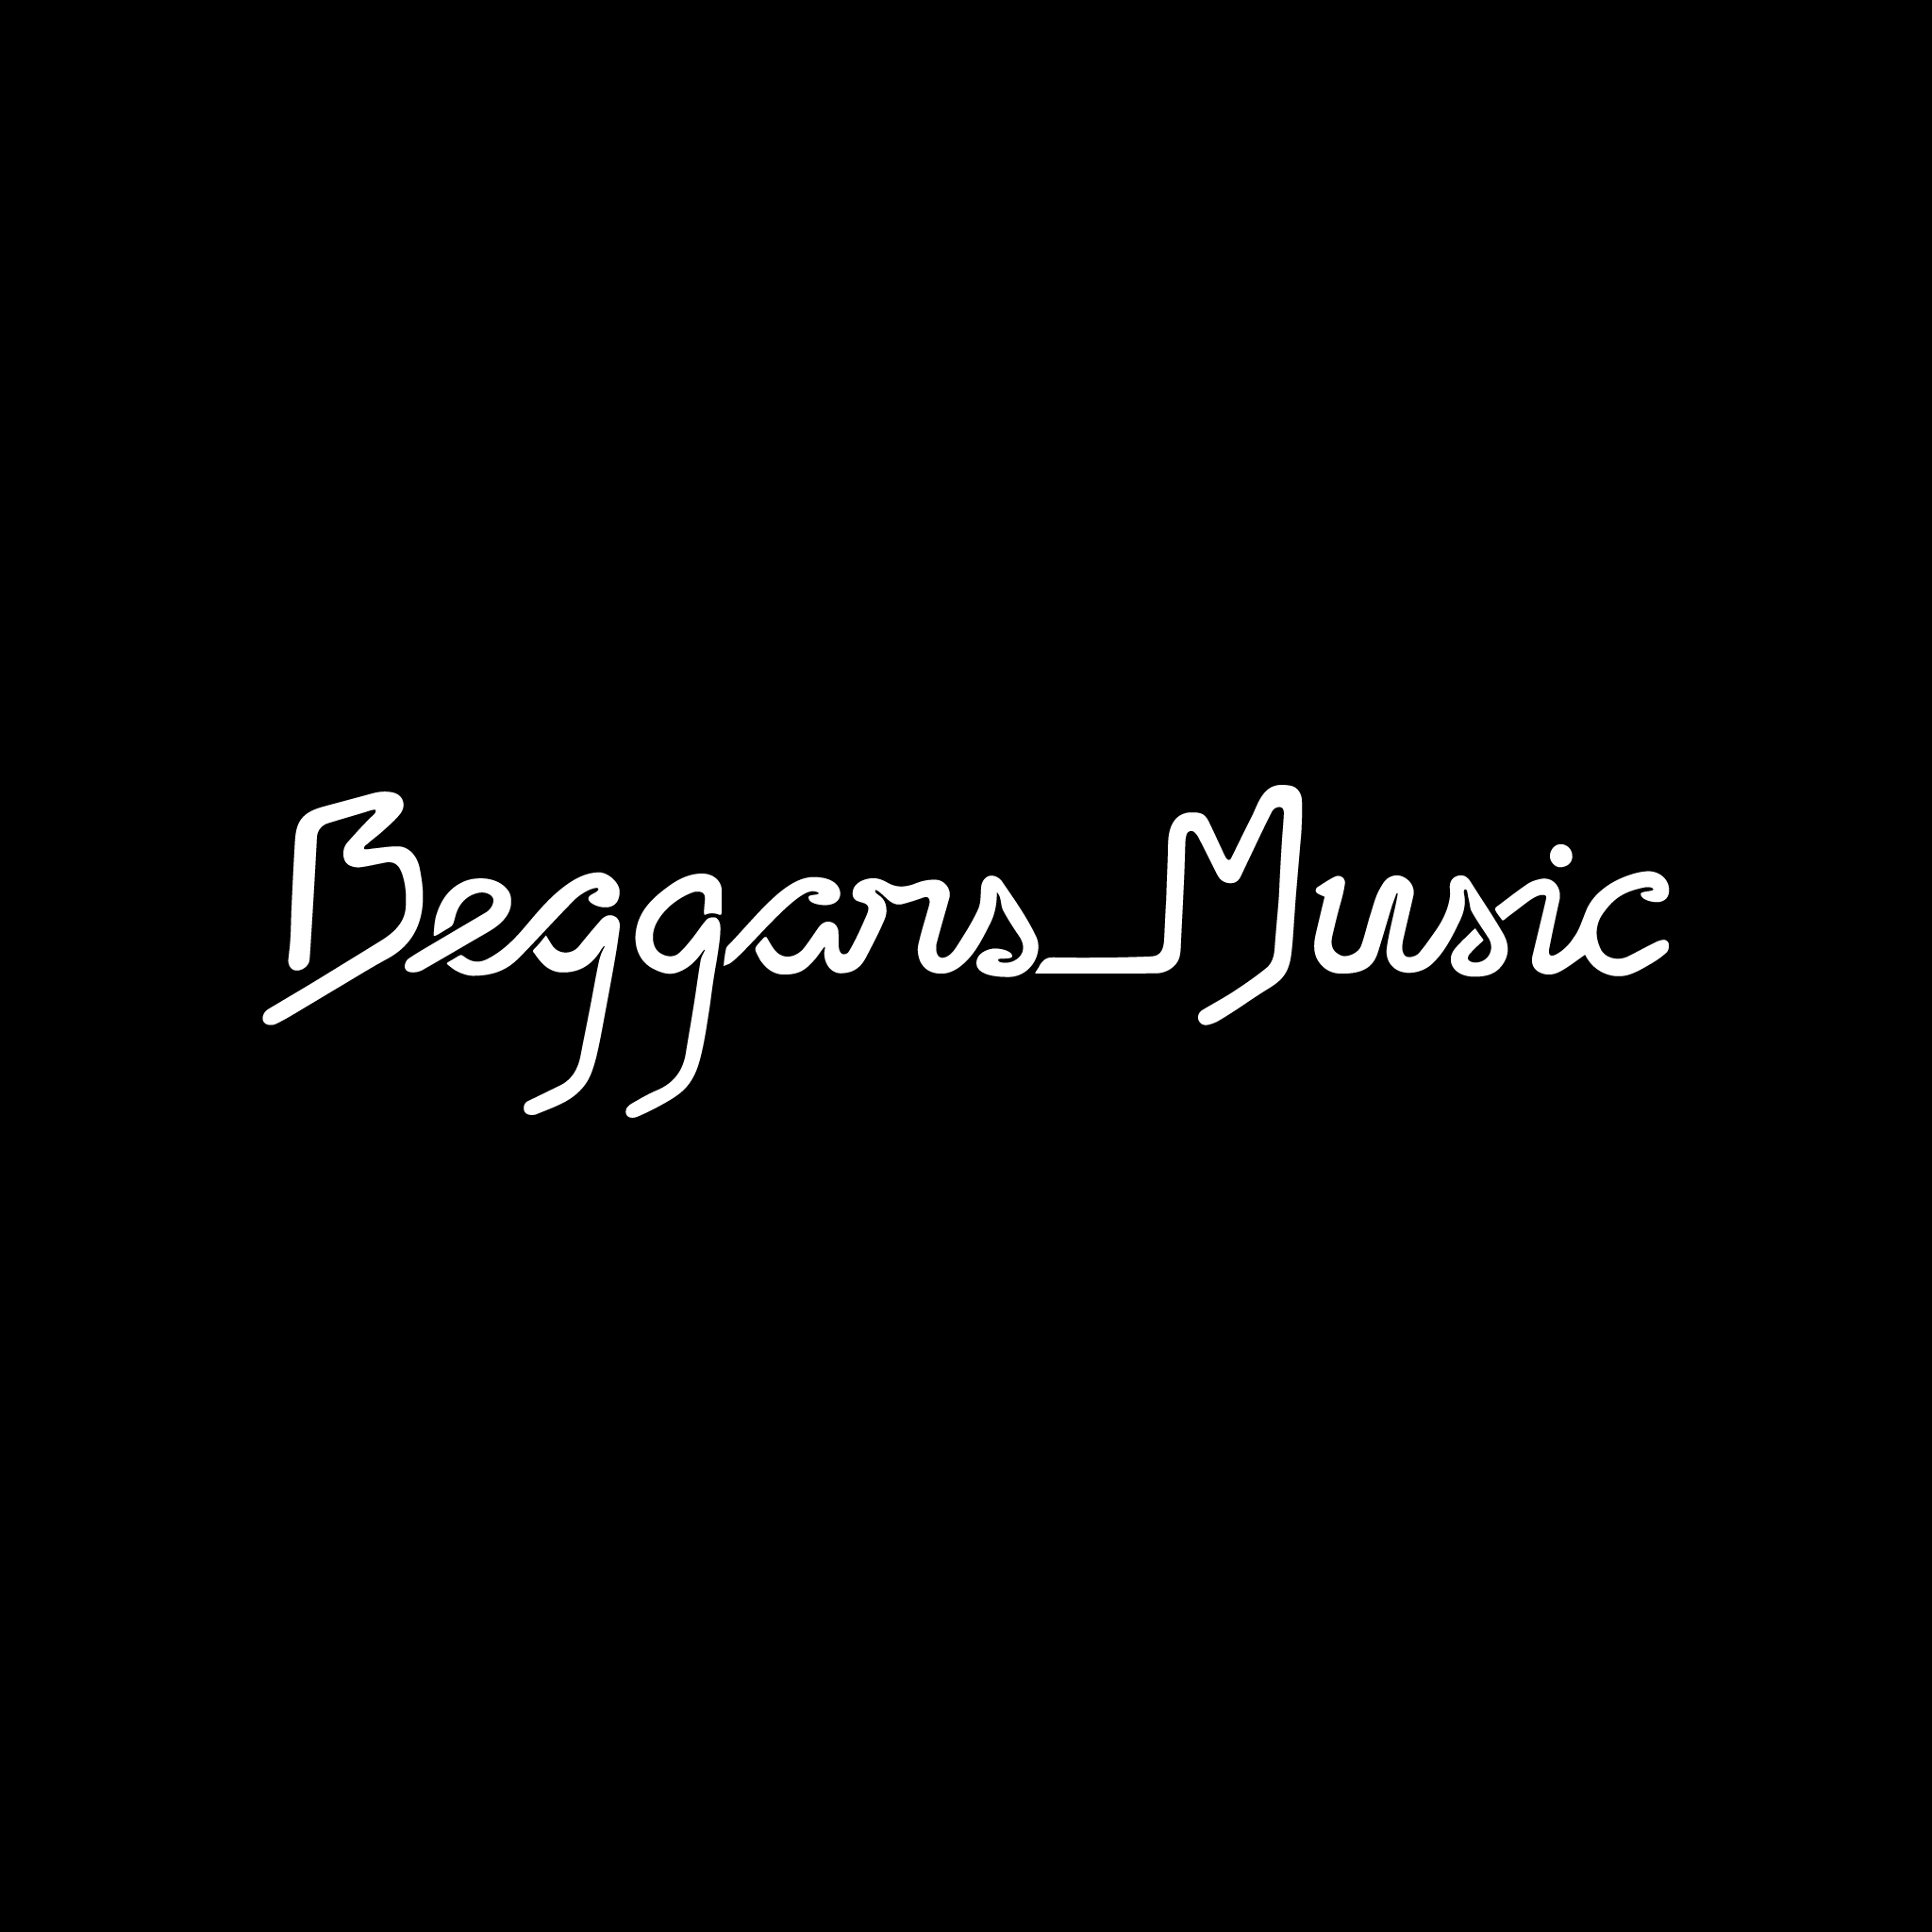 beggars music